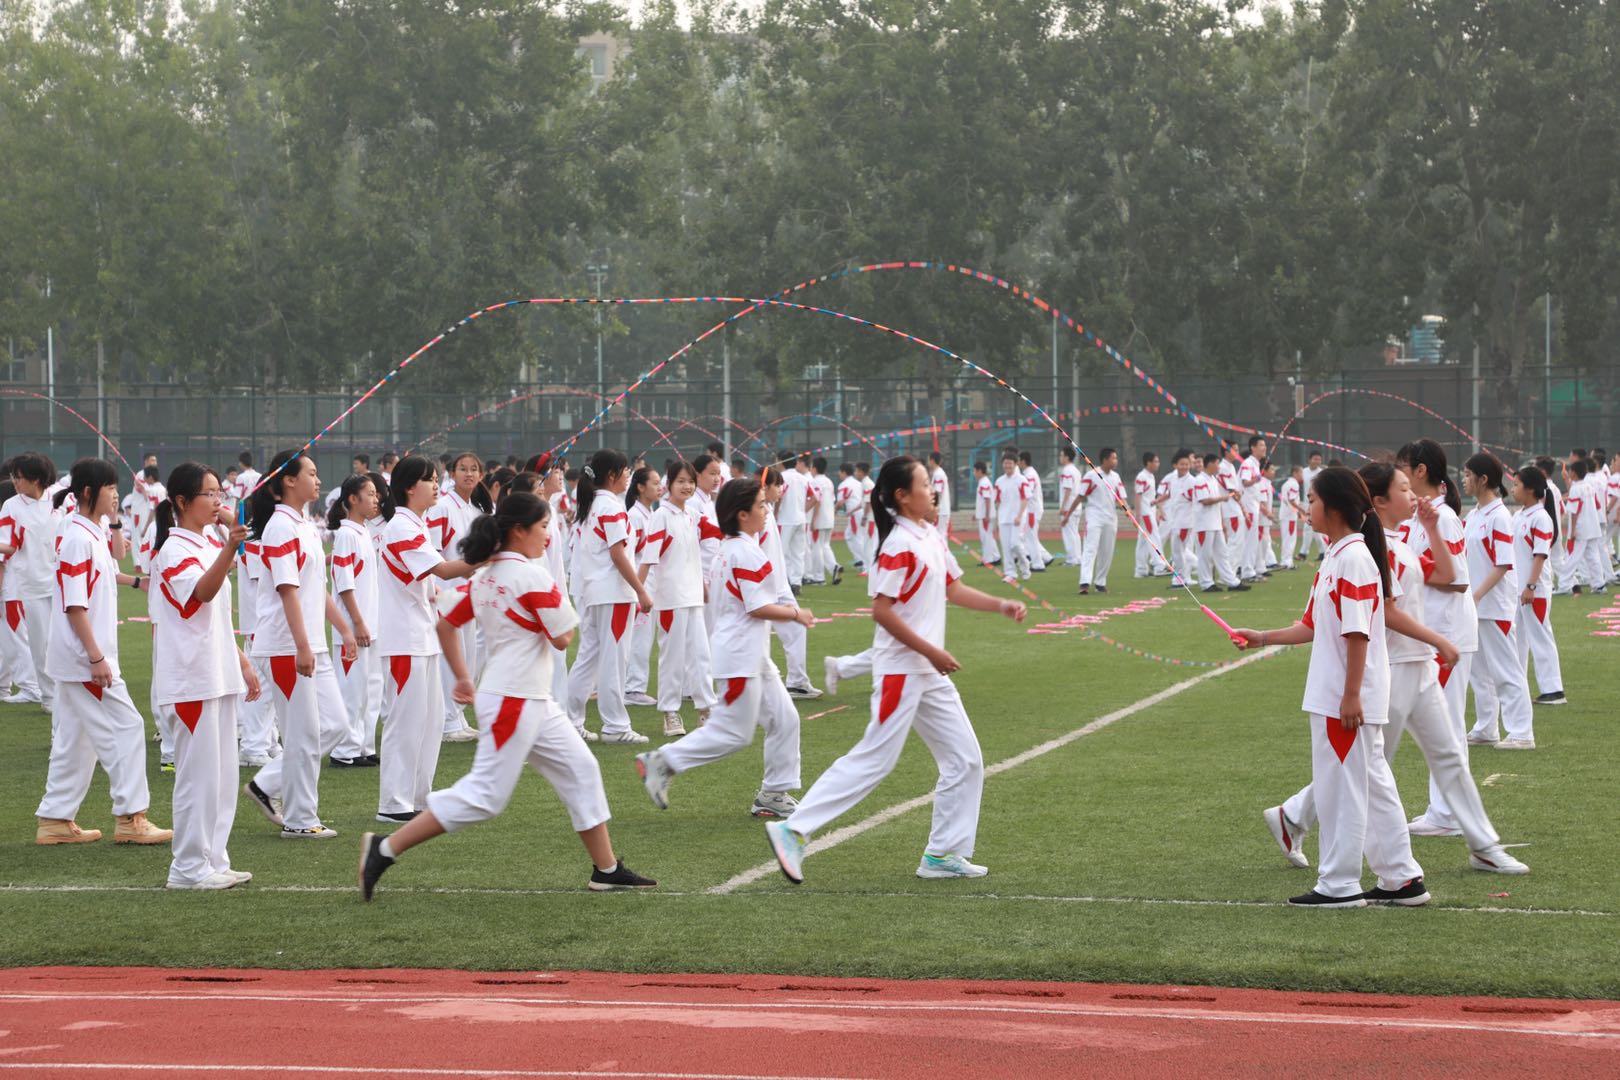 体育作业 来了 中学生开运动会 全员上 京报网